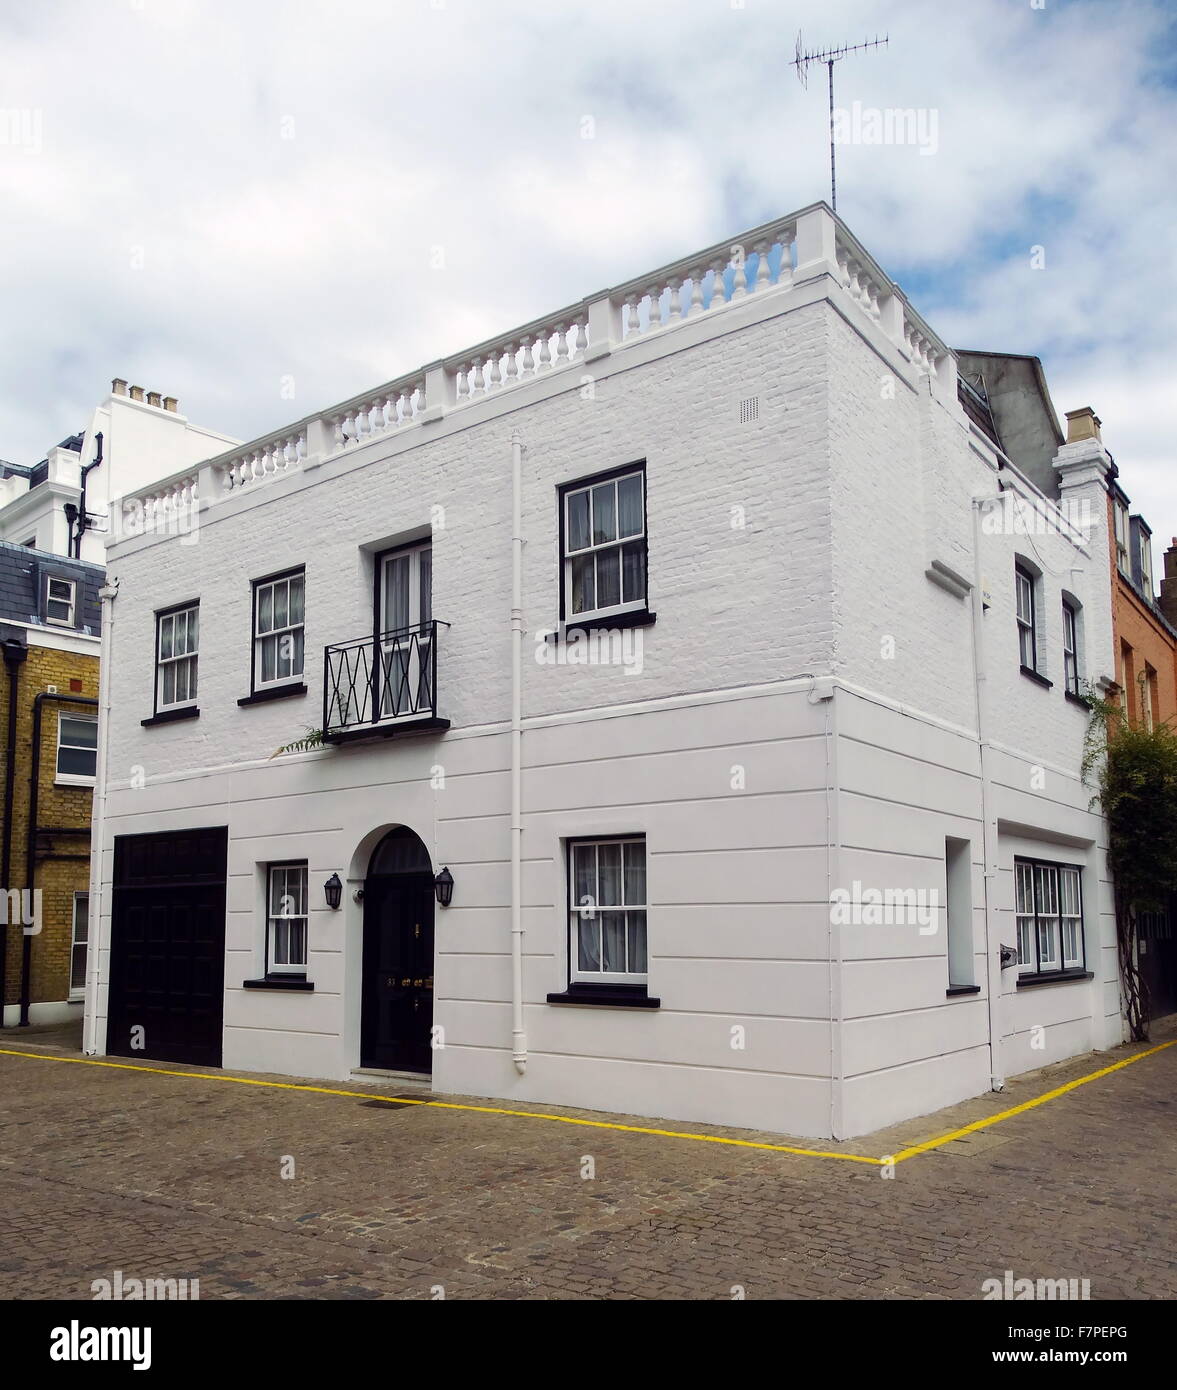 Mews logement à Knightsbridge, Londres, Angleterre. Datant de la fin du début de l'époque victorienne et géorgienne. Datée 1840 Banque D'Images